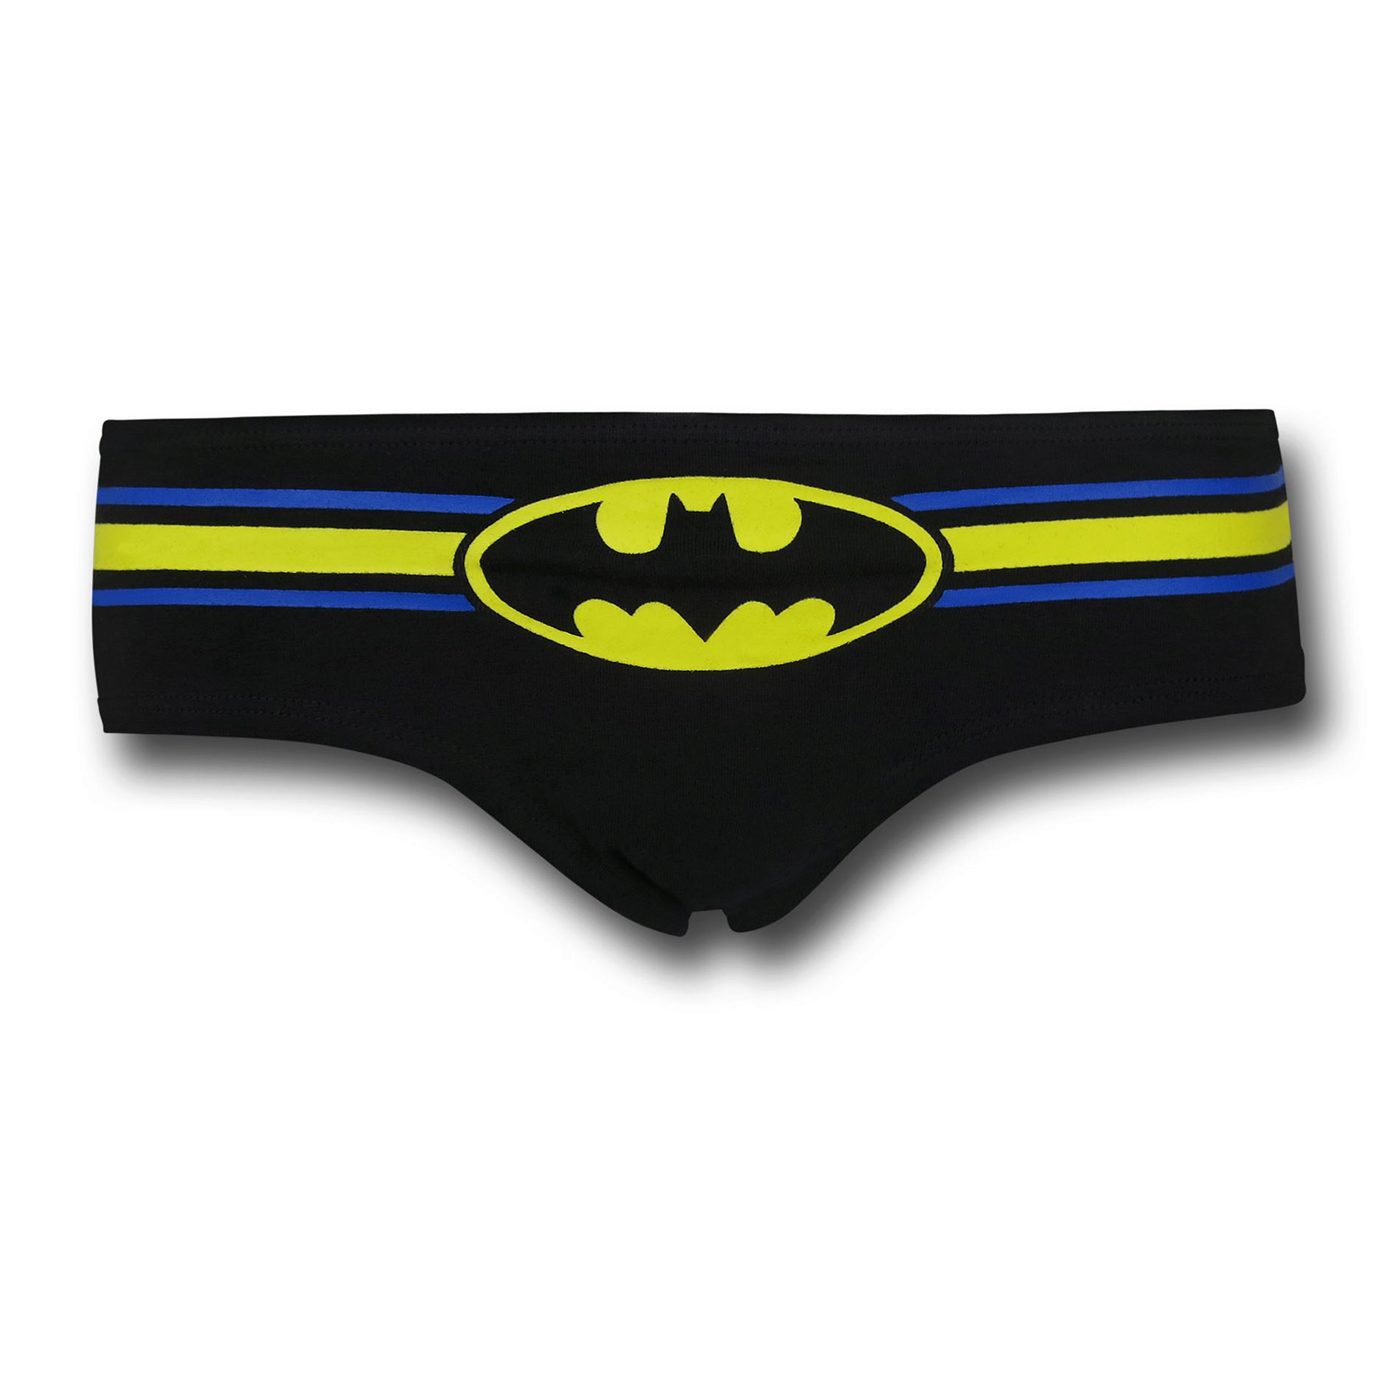 Batman Black & Yellow Women's Panty 3-Pack